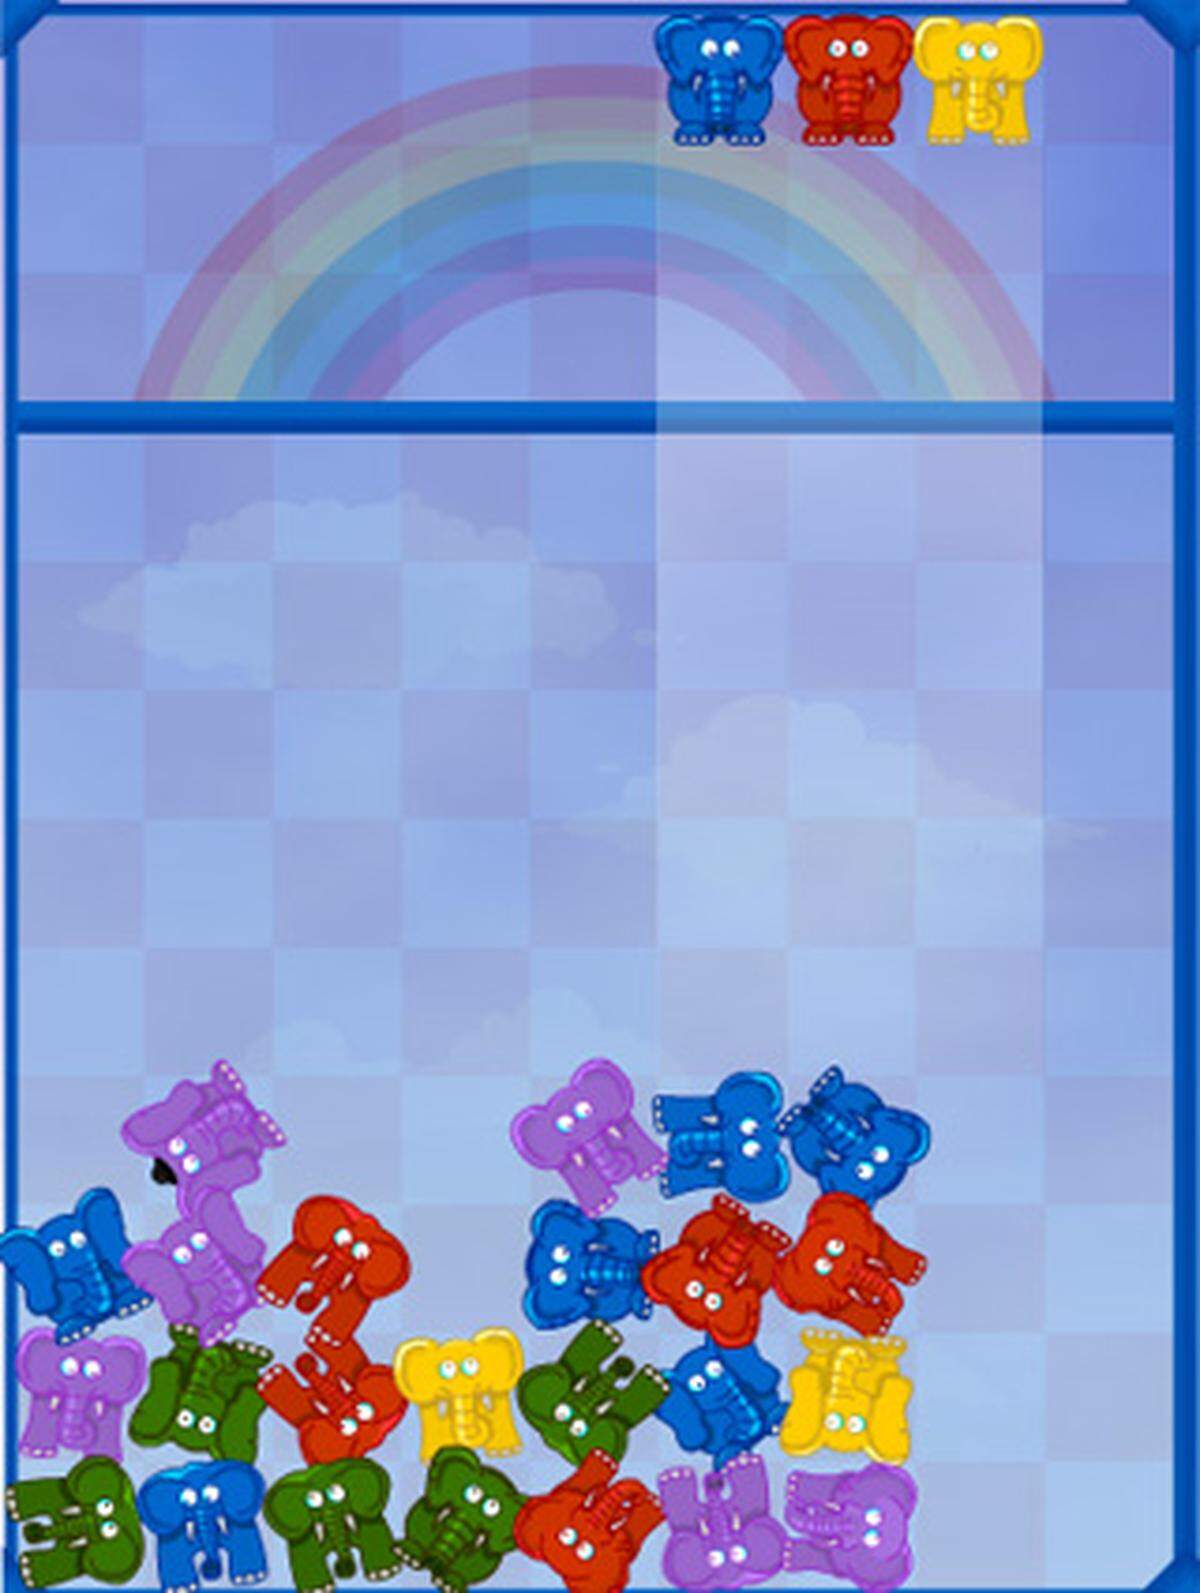 Hier wurde die Idee von "Bubble Break" aufgegriffen und mitr Tetris-Elefanten umgesetzt. Die bunten Tiere fallen von oben herab - treffen mindestens drei gleichfarbige Dickhäuter aufeinander gibt es Punkte und sie verschwinden.